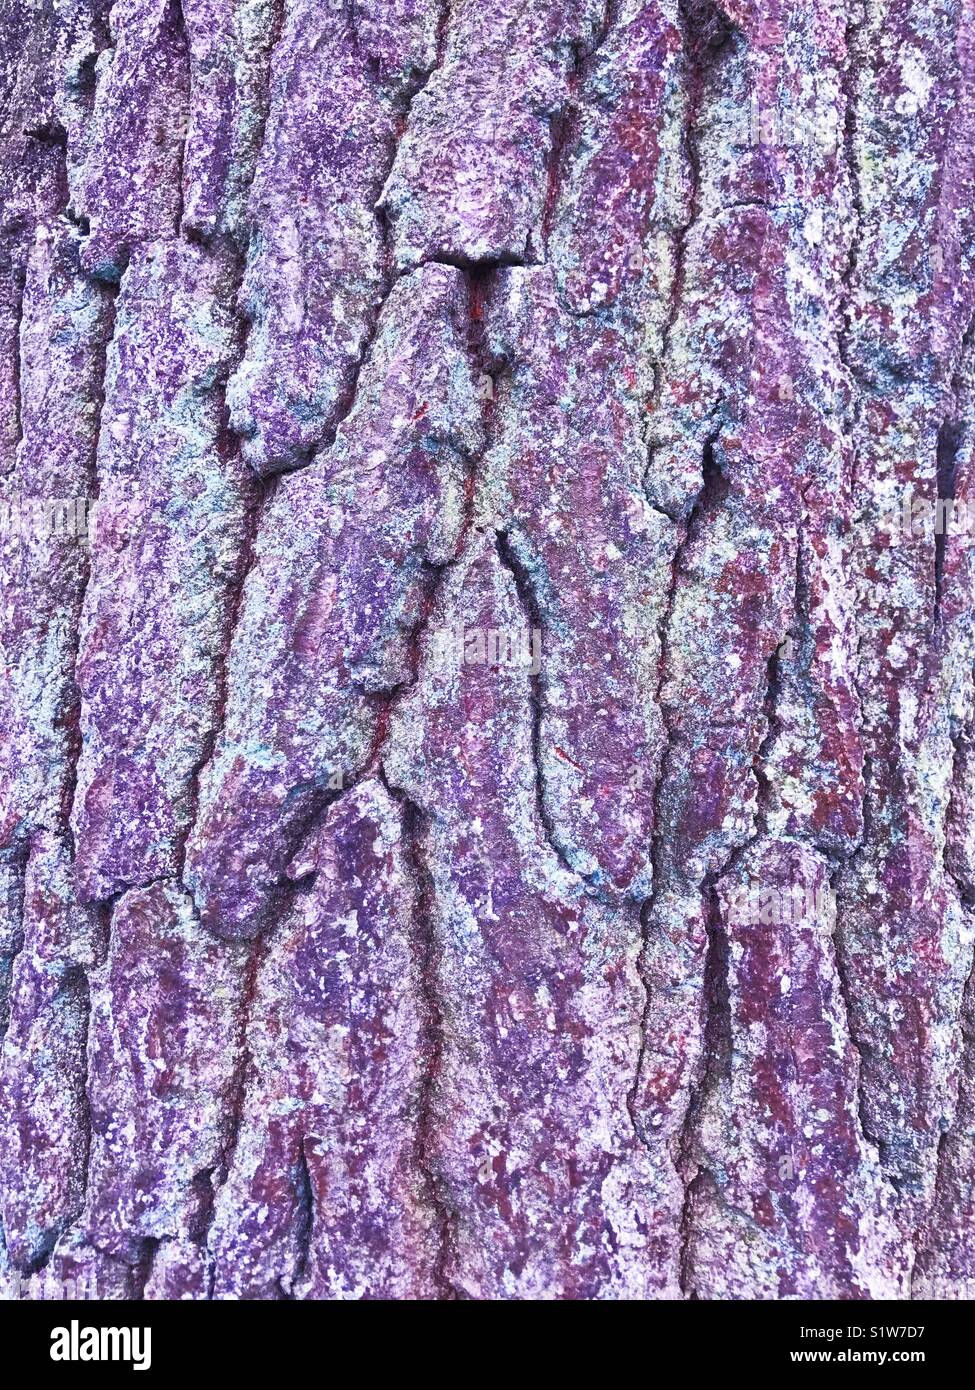 Tree bark with purple tones Stock Photo